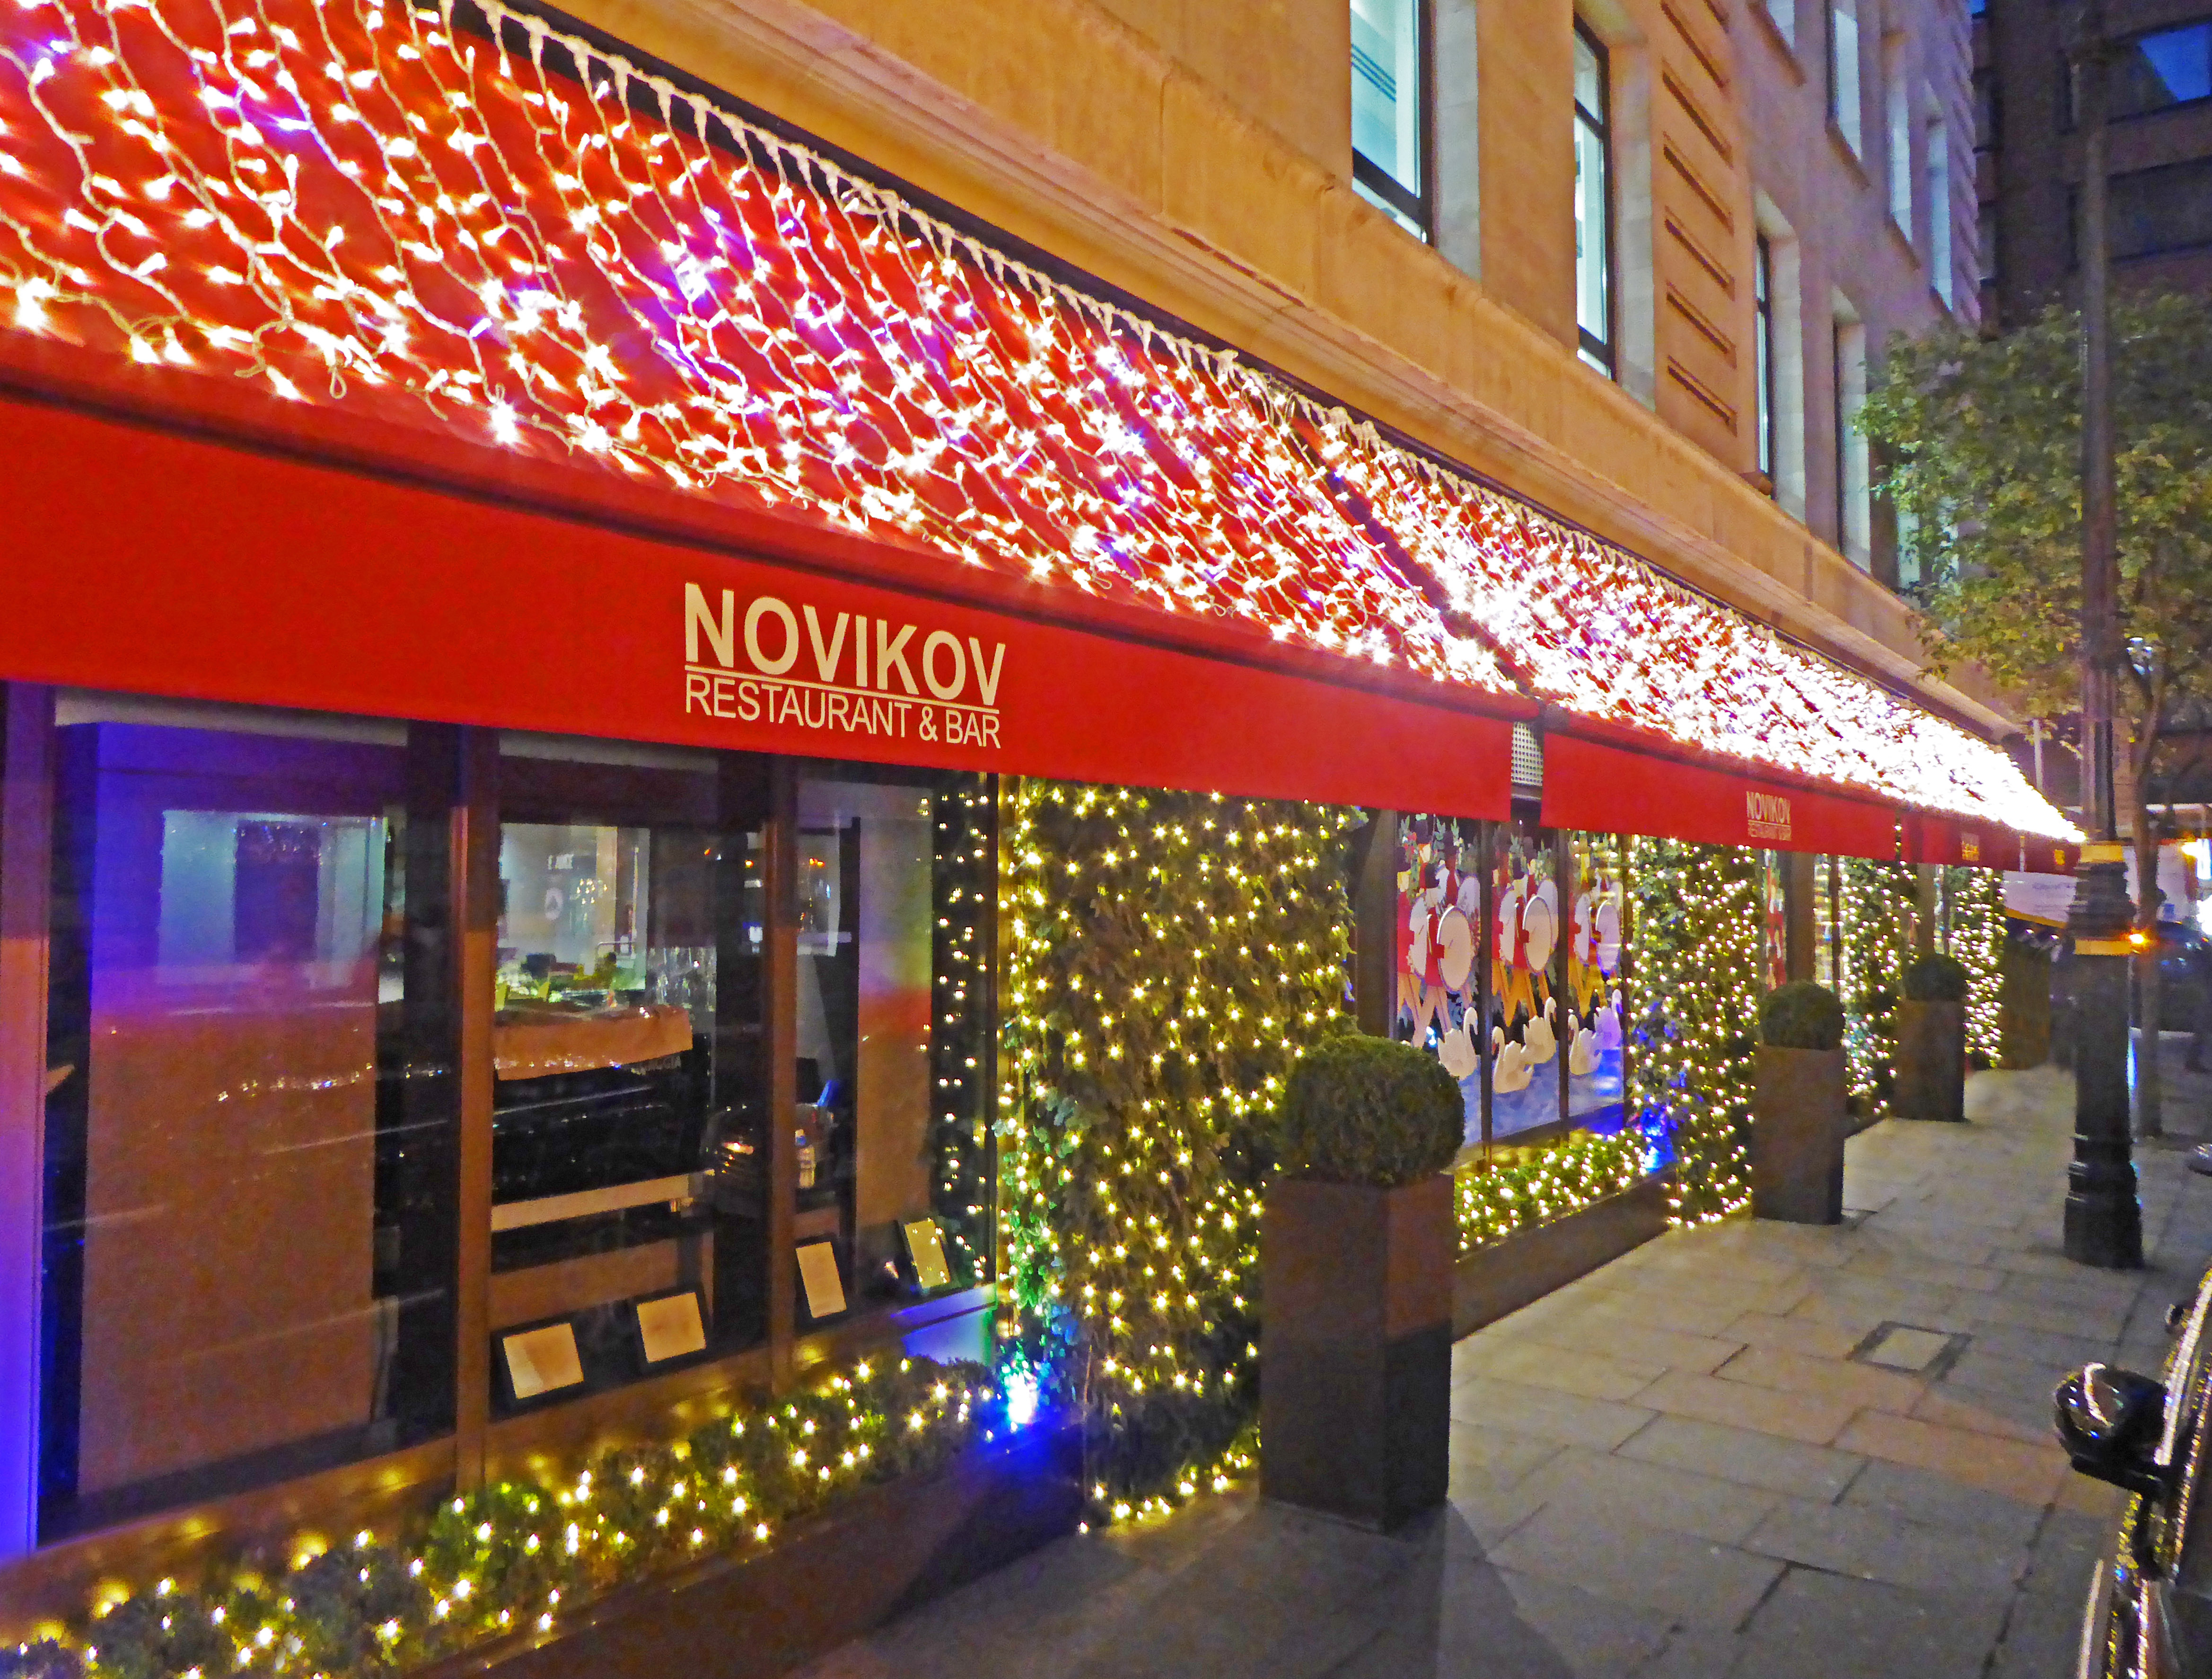 Novikov awnings at Christmas